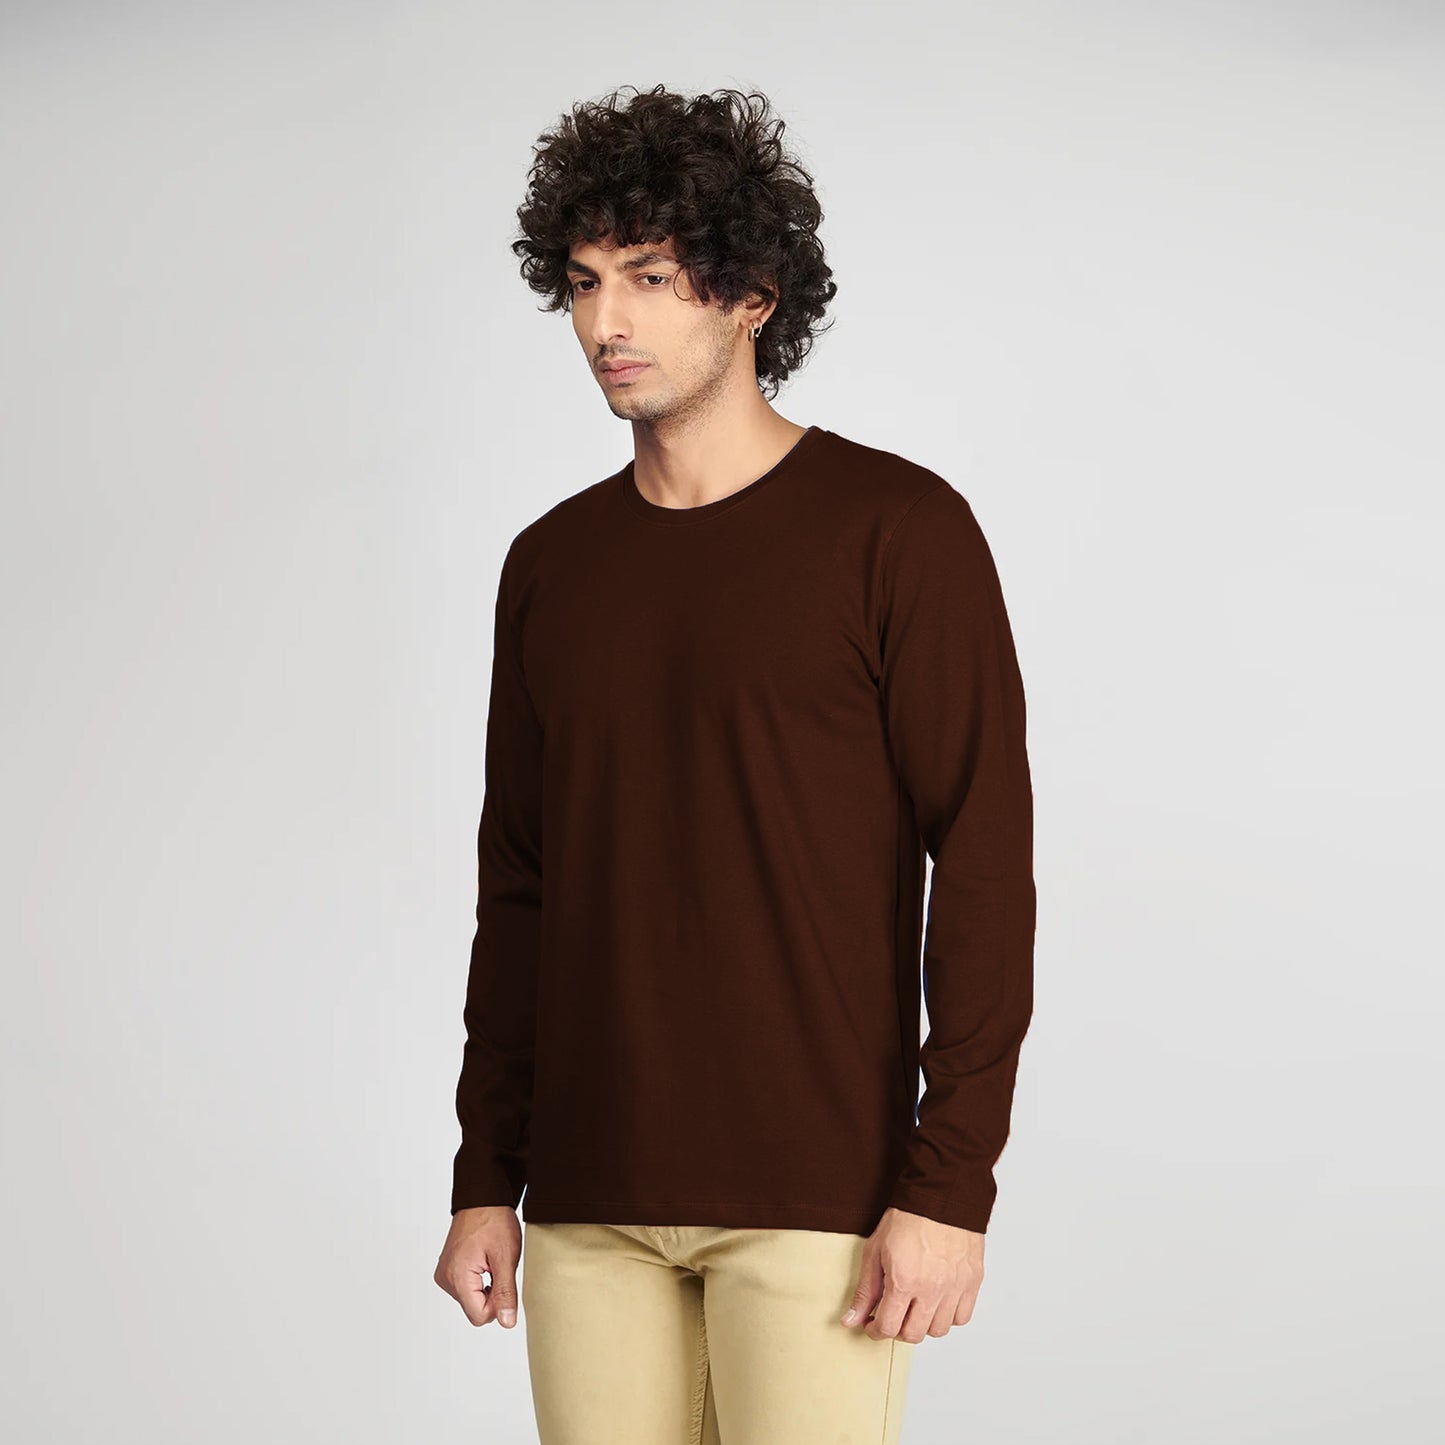 Basic Brown Full Sleeves T-Shirt